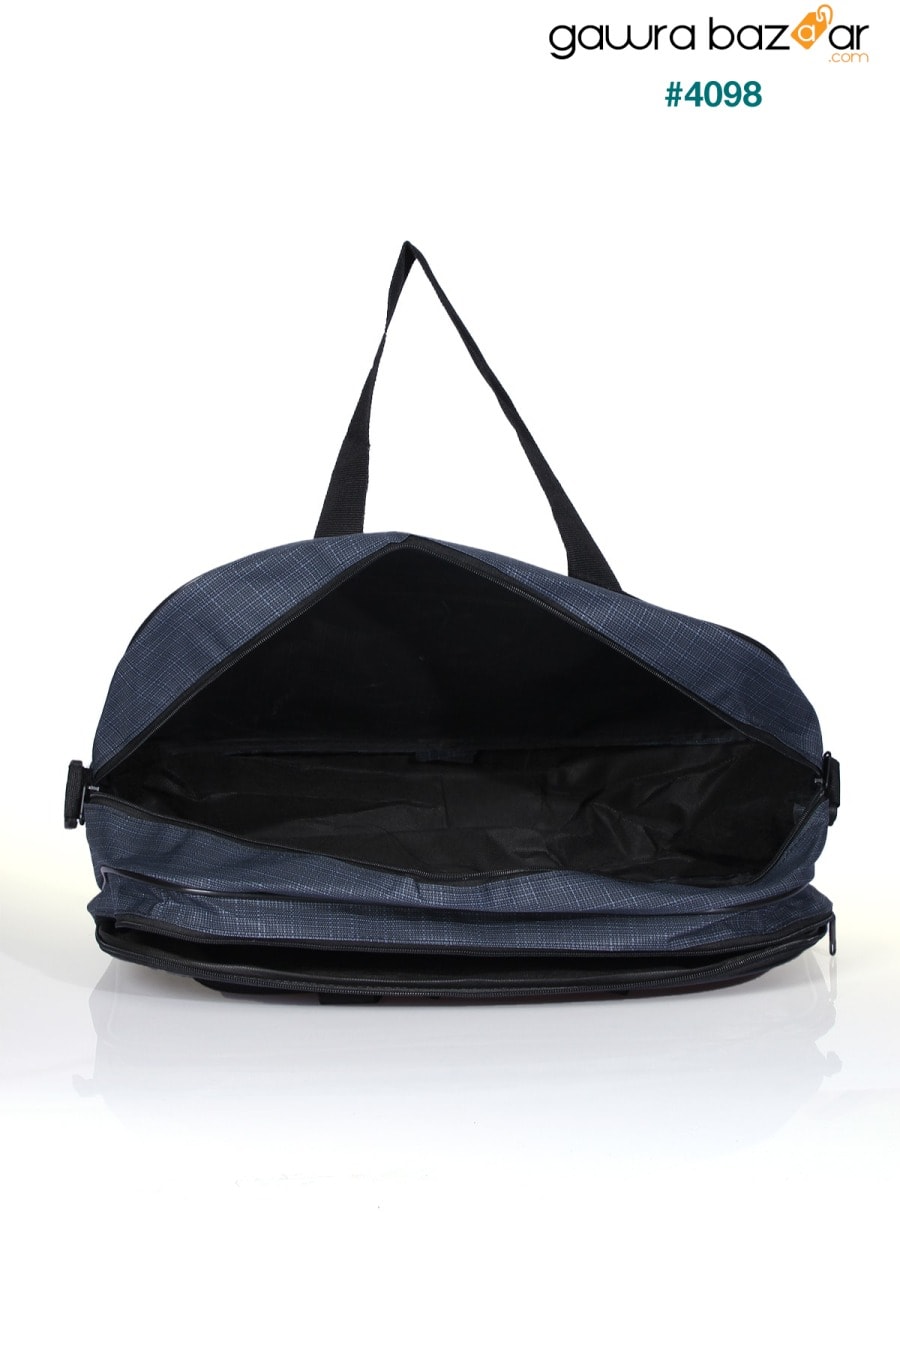 Nil-01 حقيبة مضيفة قماشية للجنسين للسفر والعطلات والمستشفى الرياضي متعدد الأقسام وحقيبة كتف Fiyaka 3